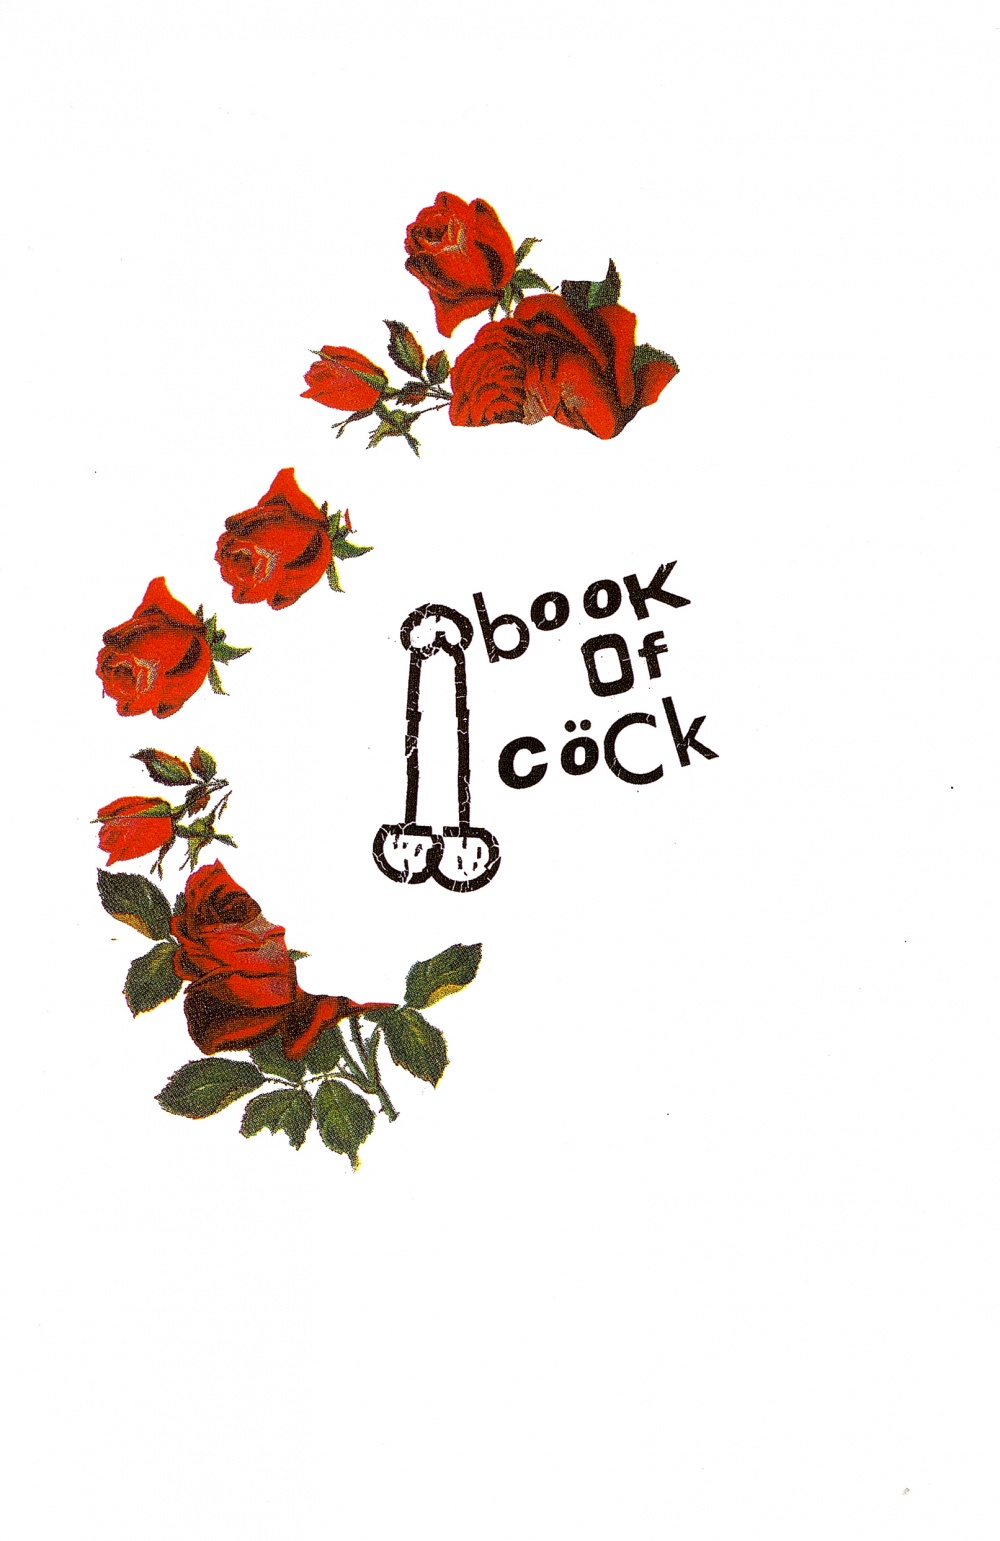 Book of Cöck